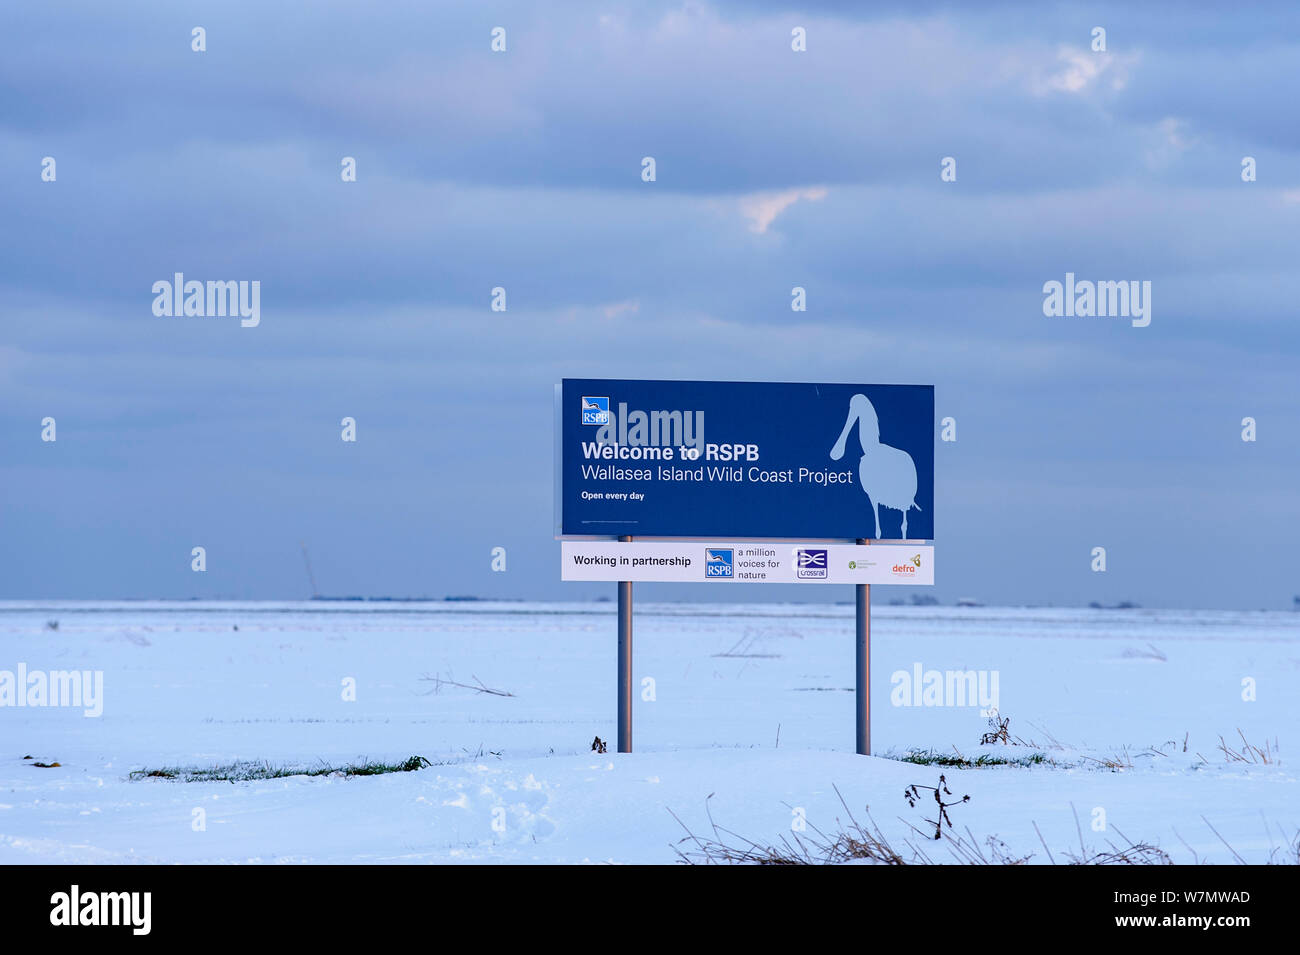 RSPB segno nella neve per Wallasea Island costa selvaggia Progetto, Essex, Inghilterra, Regno Unito, febbraio. Foto Stock